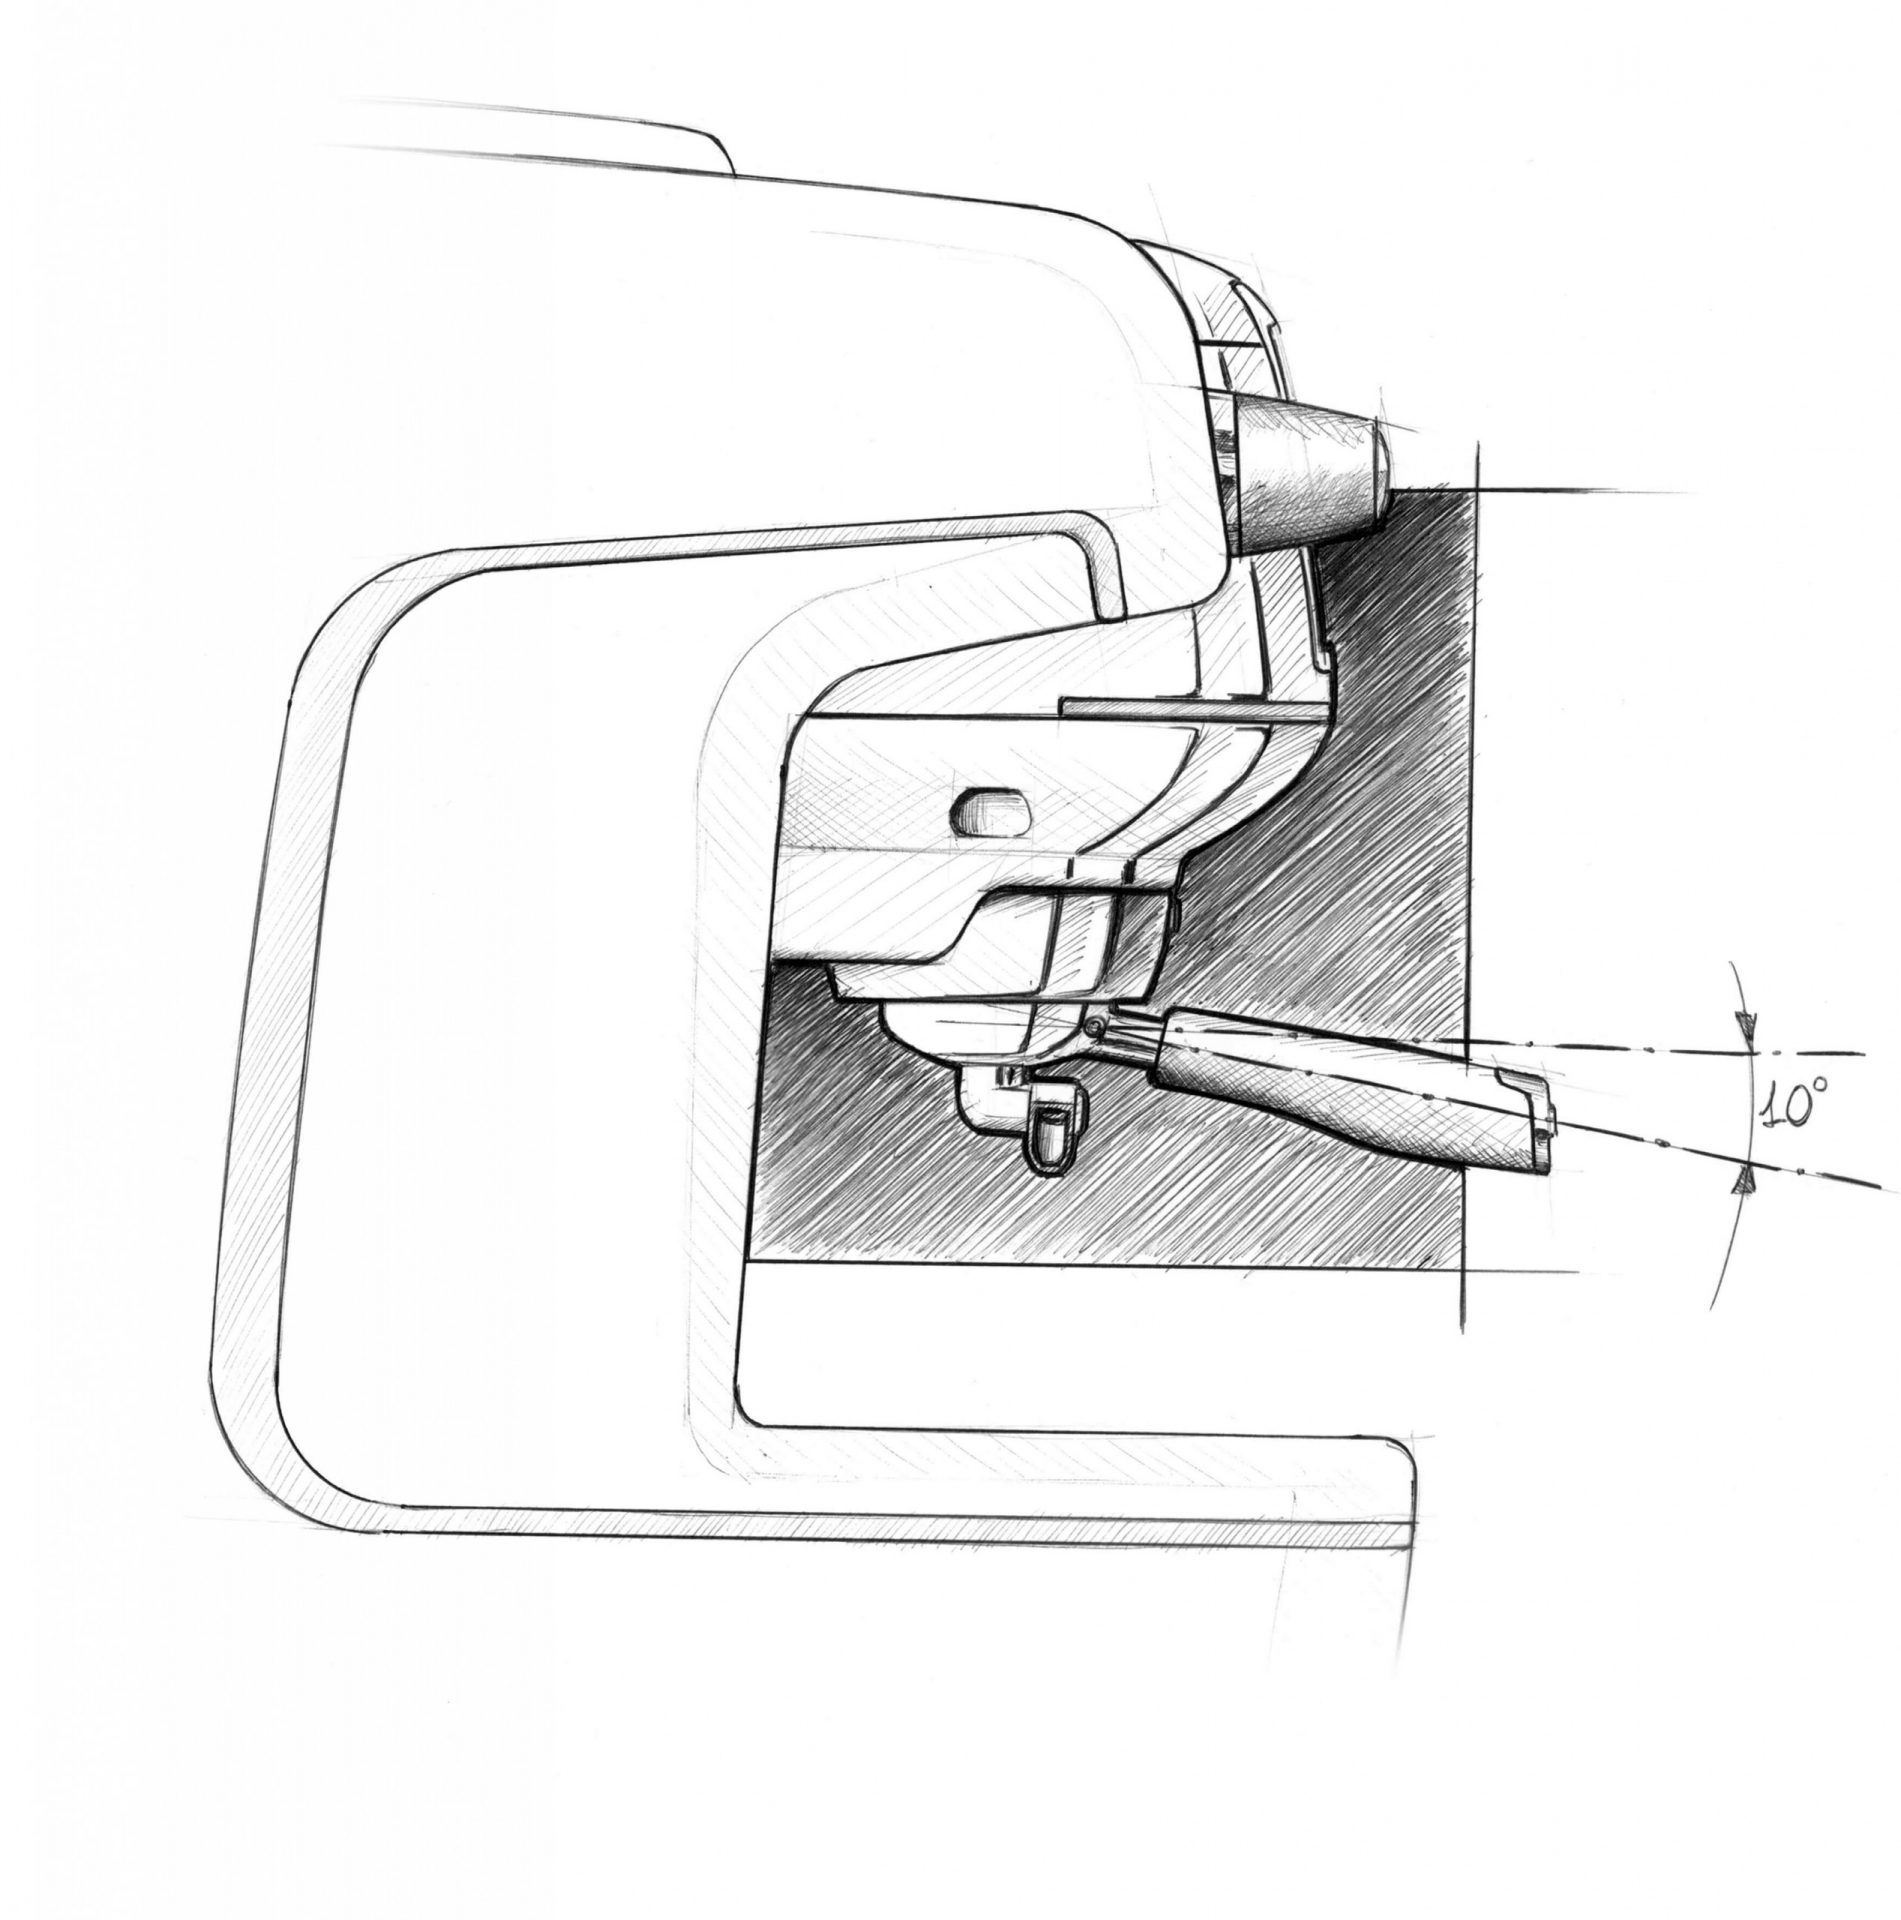 V12 Design - sketeches detail